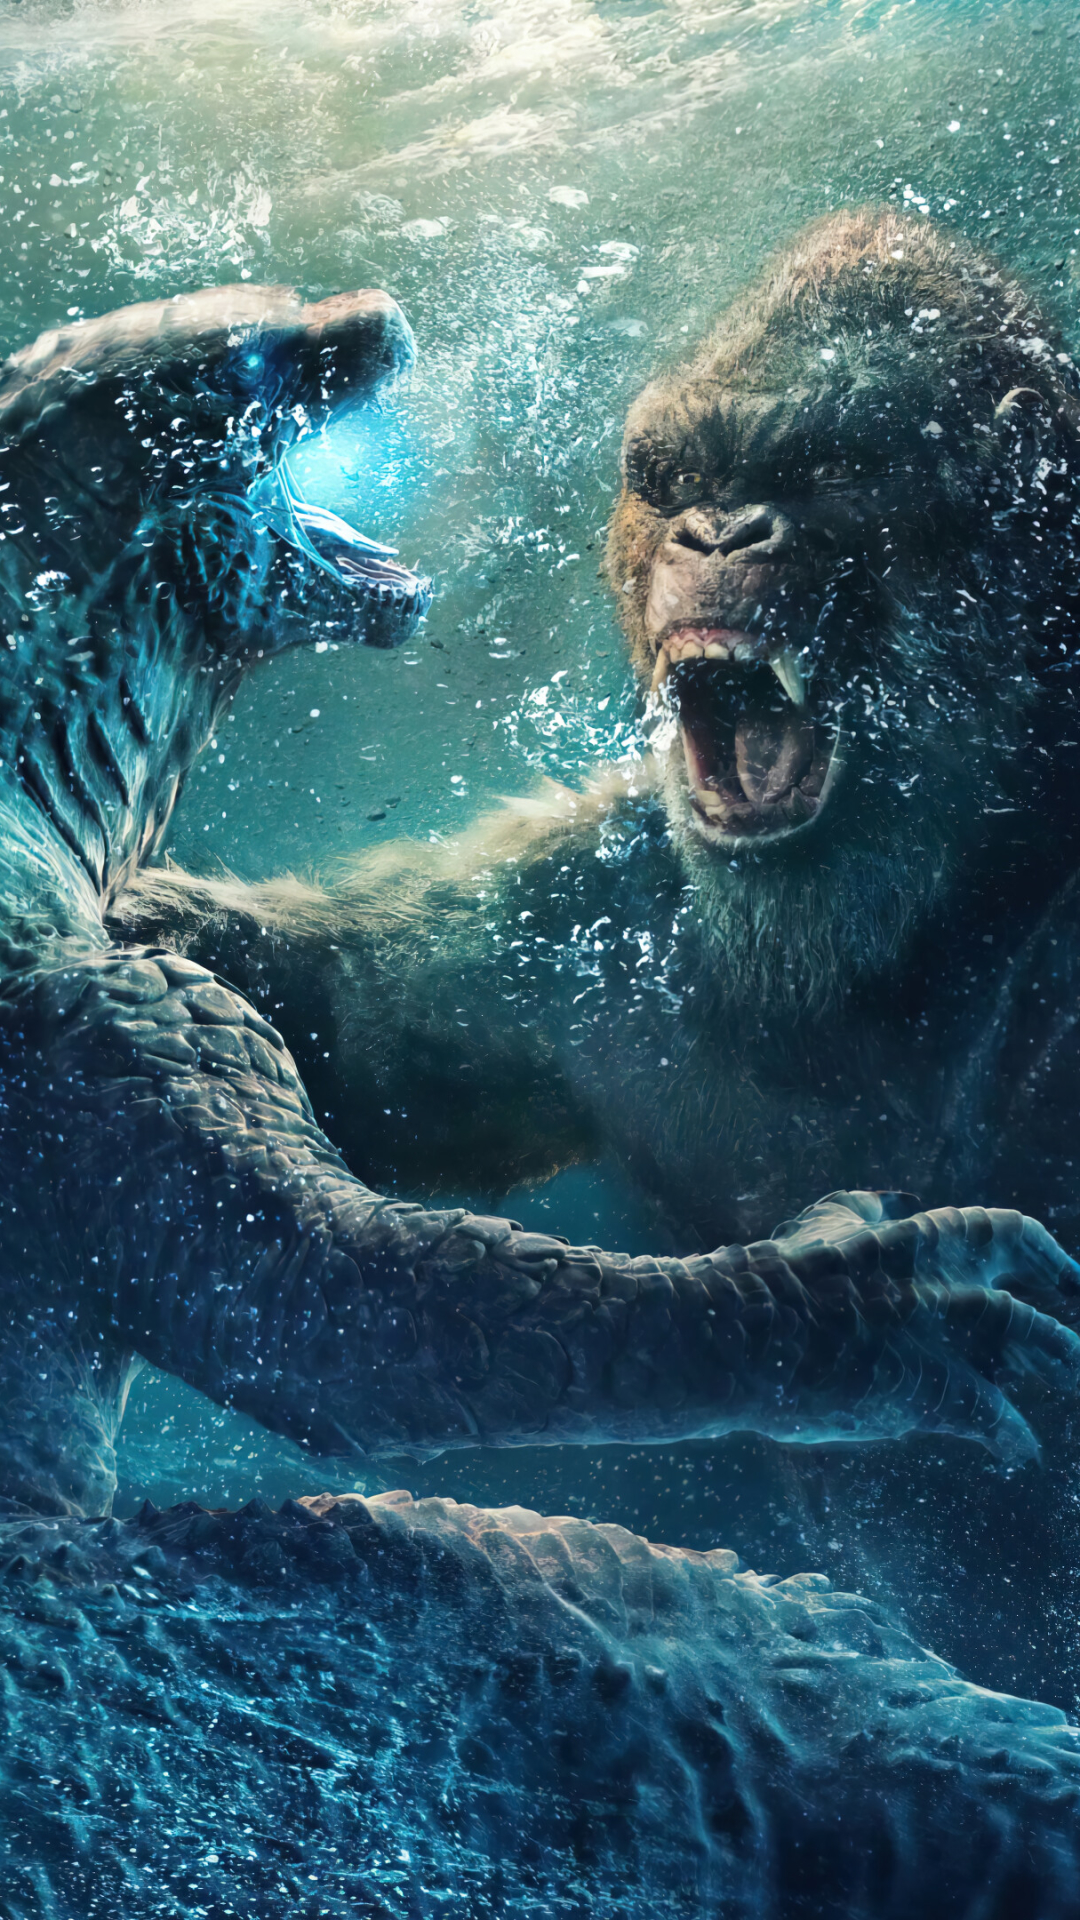 Handy-Wallpaper Filme, König Kong, Godzilla Vs Kong kostenlos herunterladen.